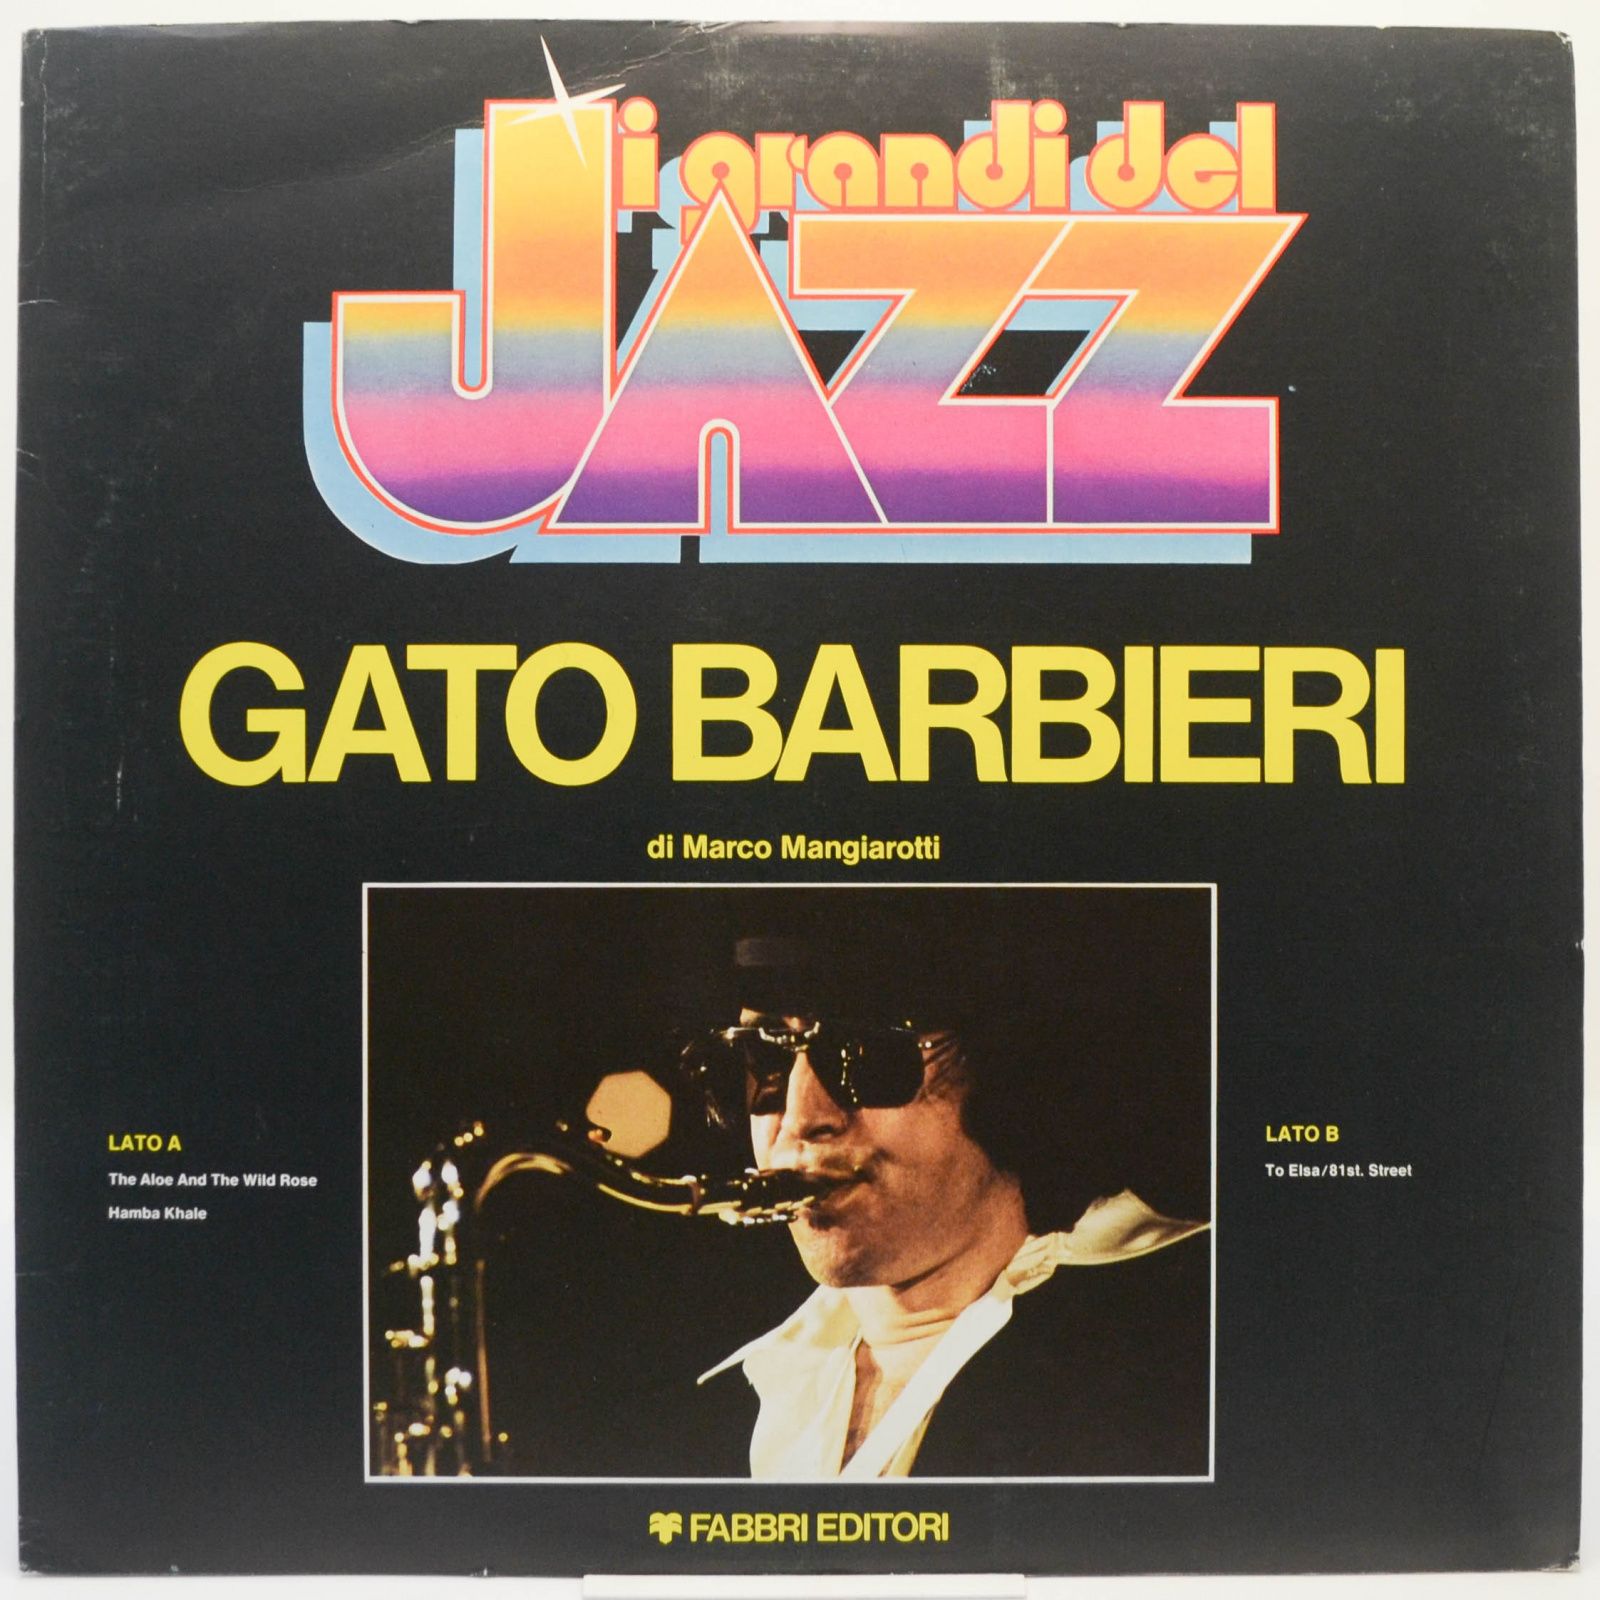 Gato Barbieri, 1980